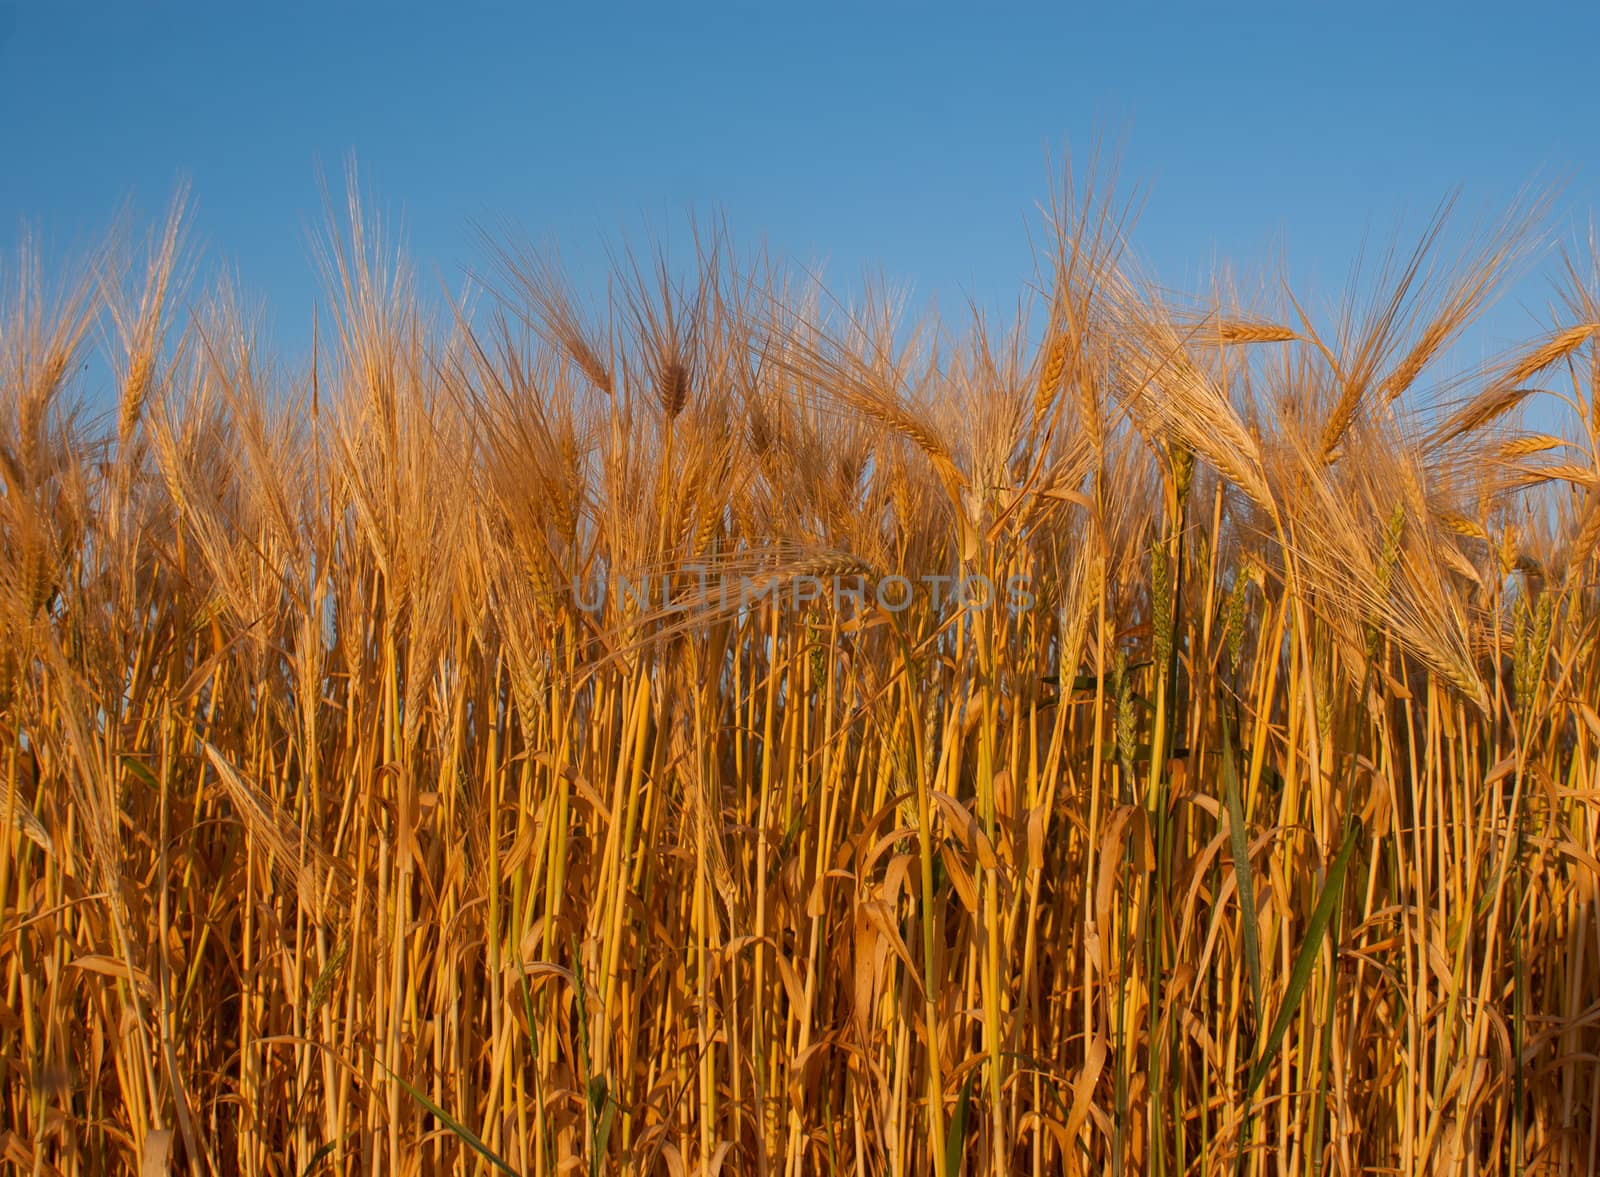 Wheat ear against blue sky